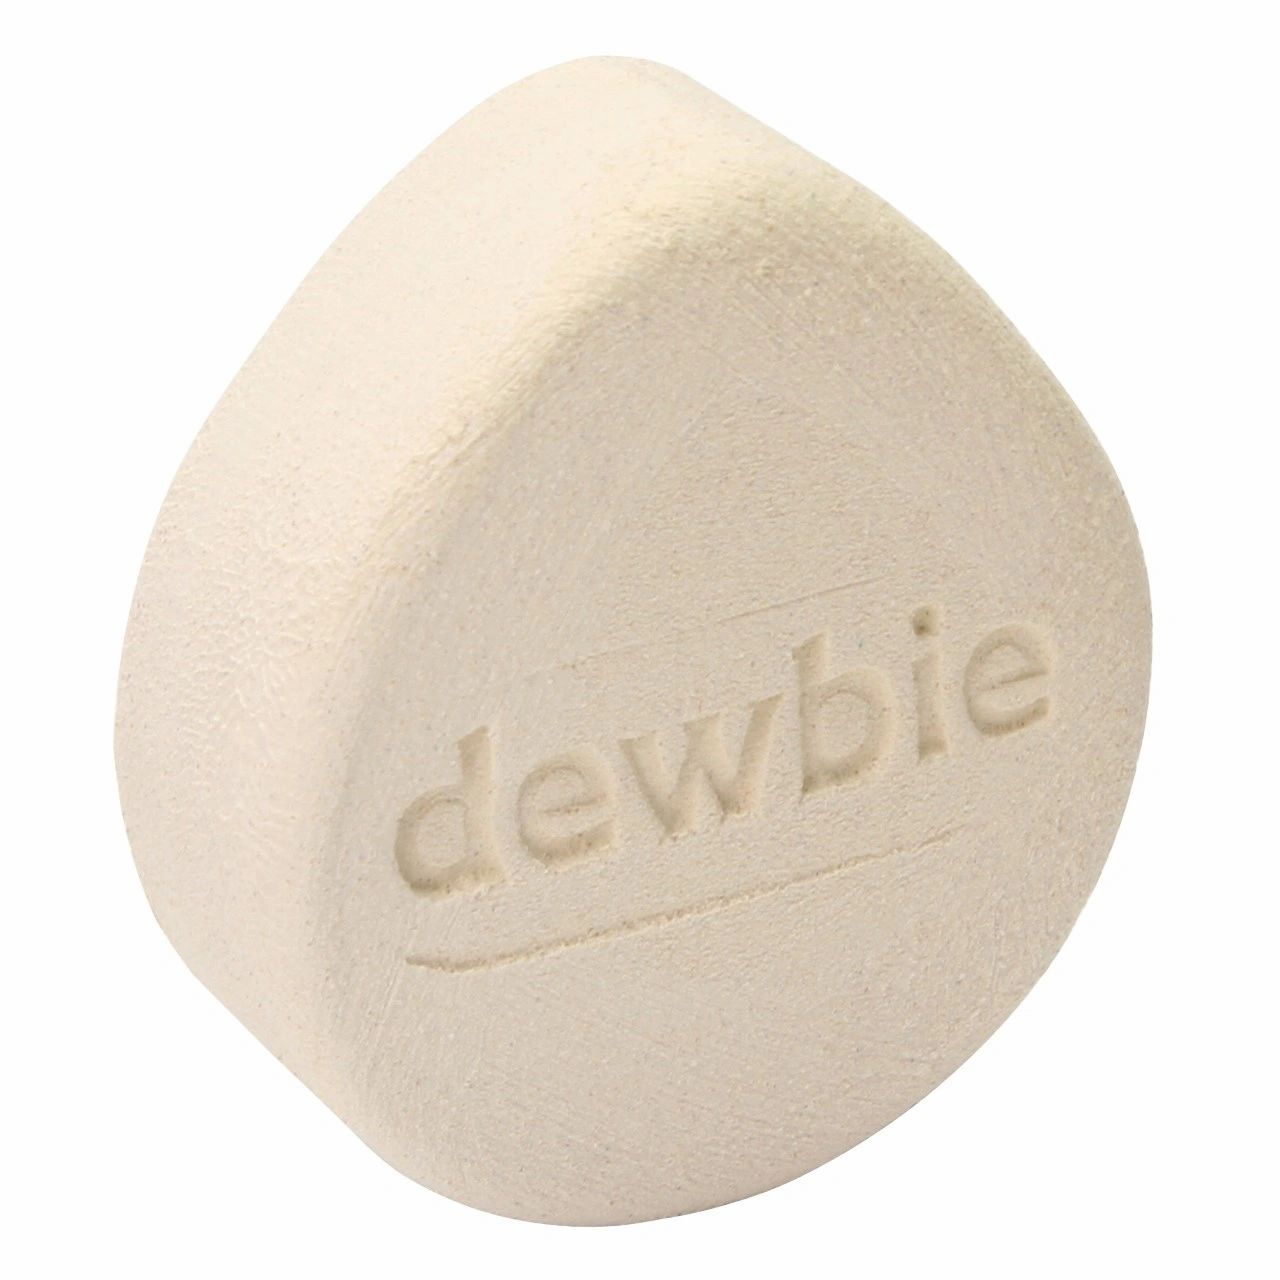 dewbie stone